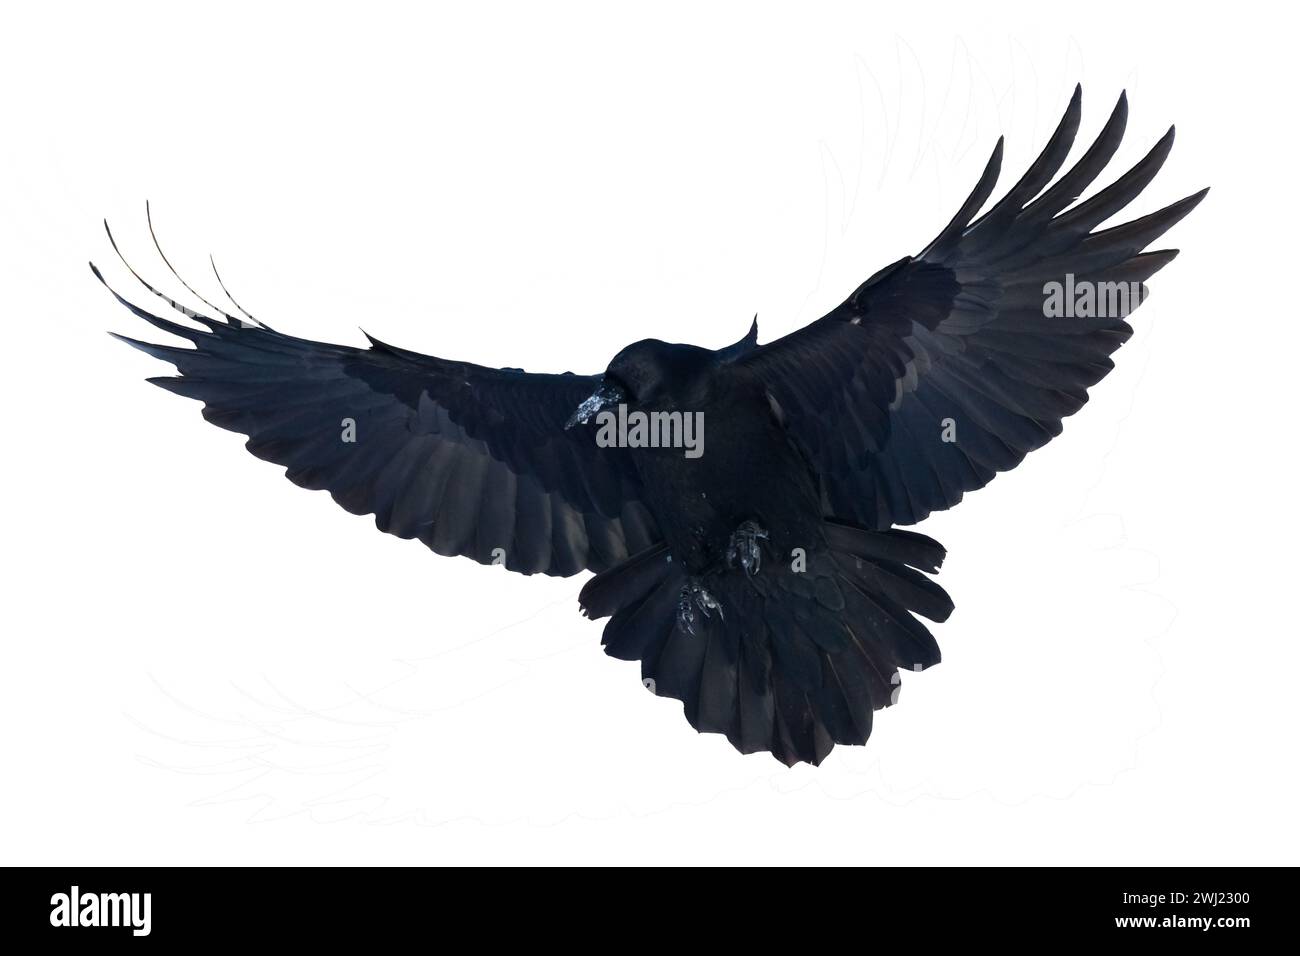 Oiseaux volants corbeau isolé sur fond blanc Corvus corax. Silhouette d'Halloween d'un grand oiseau noir en vol Banque D'Images